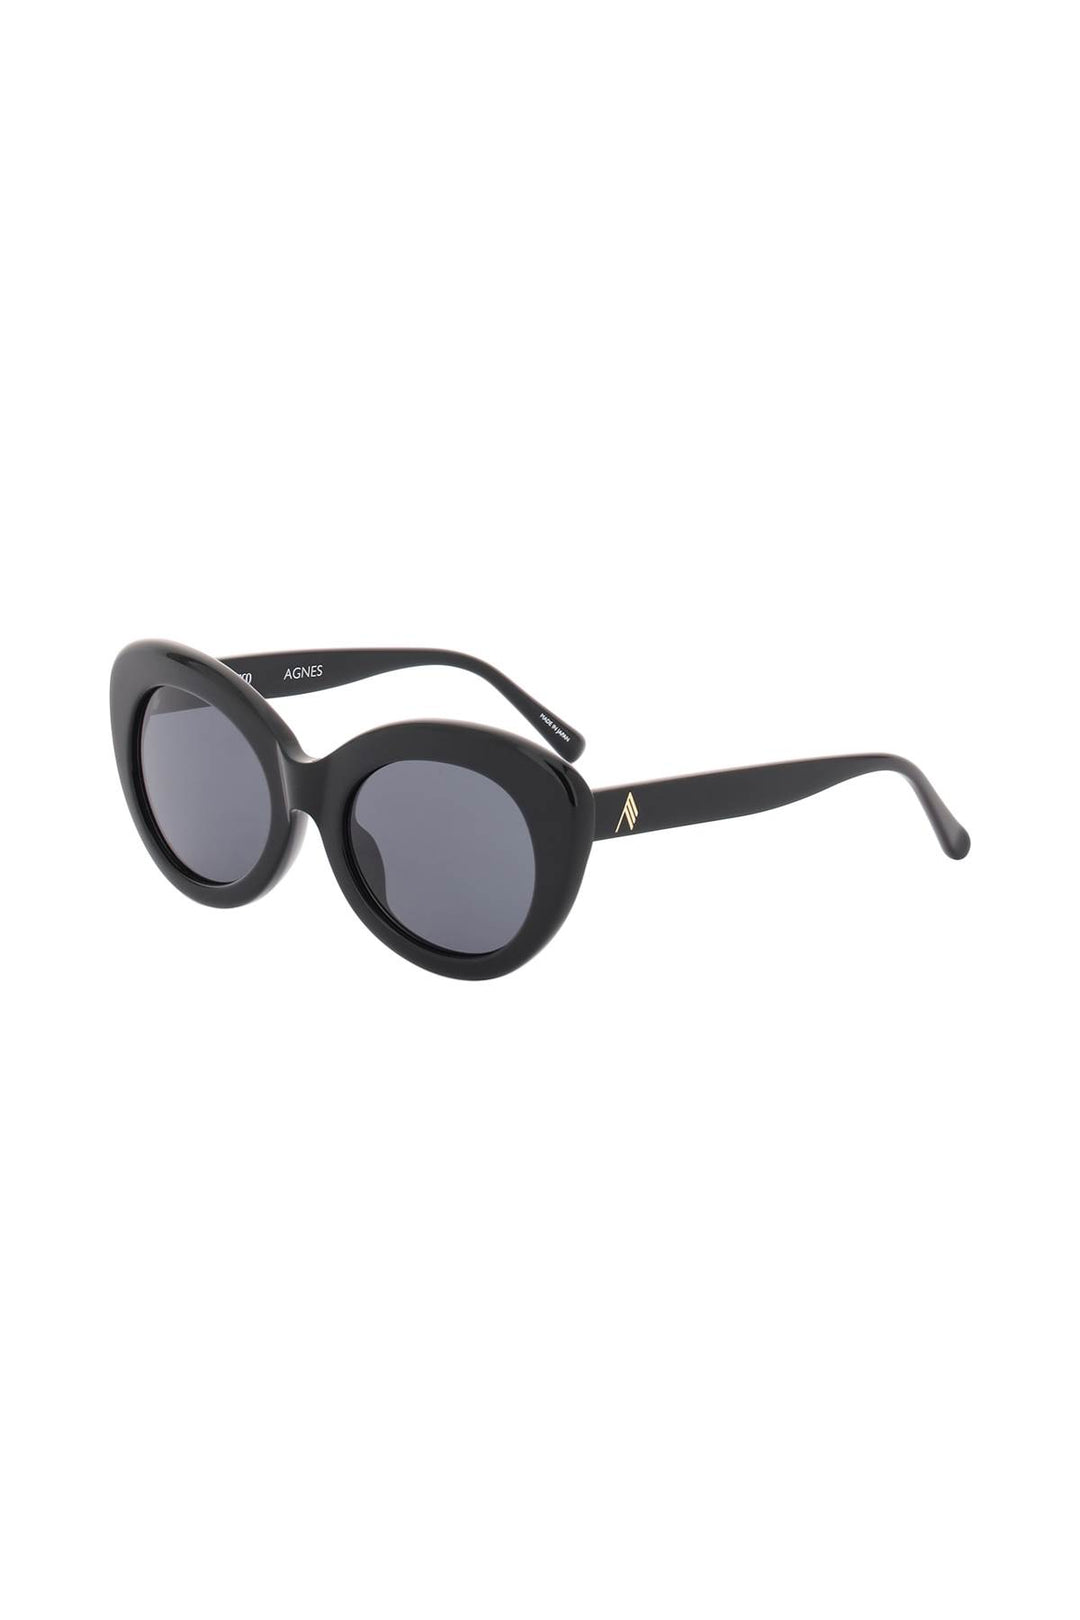 The Attico 'Agnes' Sunglasses   Nero